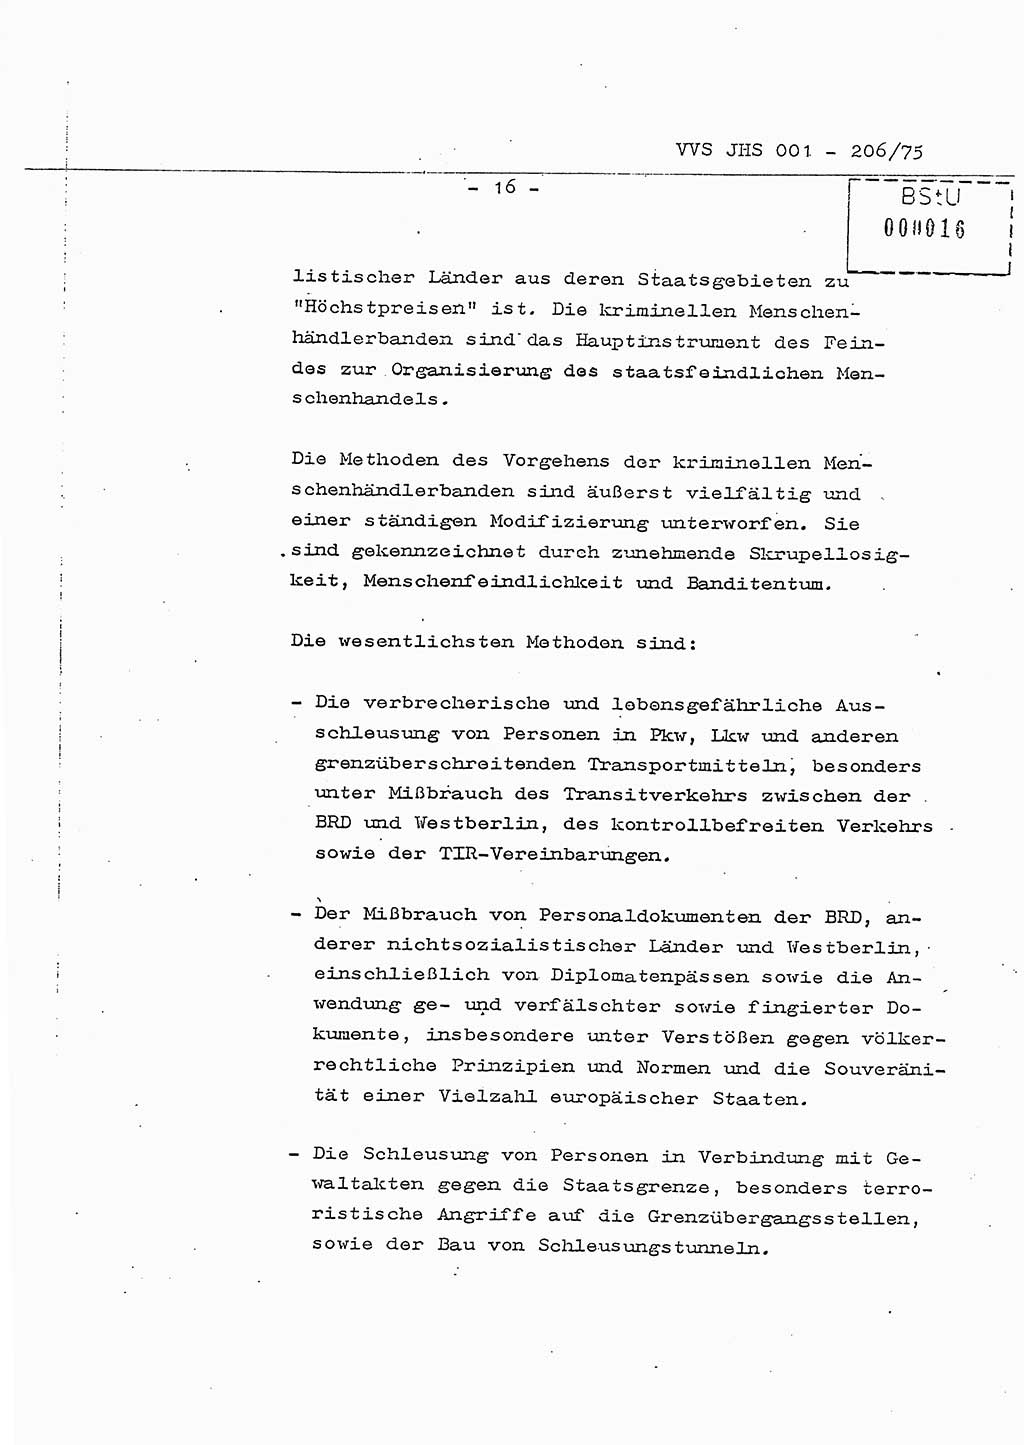 Dissertation Generalmajor Manfred Hummitzsch (Leiter der BV Leipzig), Generalmajor Heinz Fiedler (HA Ⅵ), Oberst Rolf Fister (HA Ⅸ), Ministerium für Staatssicherheit (MfS) [Deutsche Demokratische Republik (DDR)], Juristische Hochschule (JHS), Vertrauliche Verschlußsache (VVS) 001-206/75, Potsdam 1975, Seite 16 (Diss. MfS DDR JHS VVS 001-206/75 1975, S. 16)